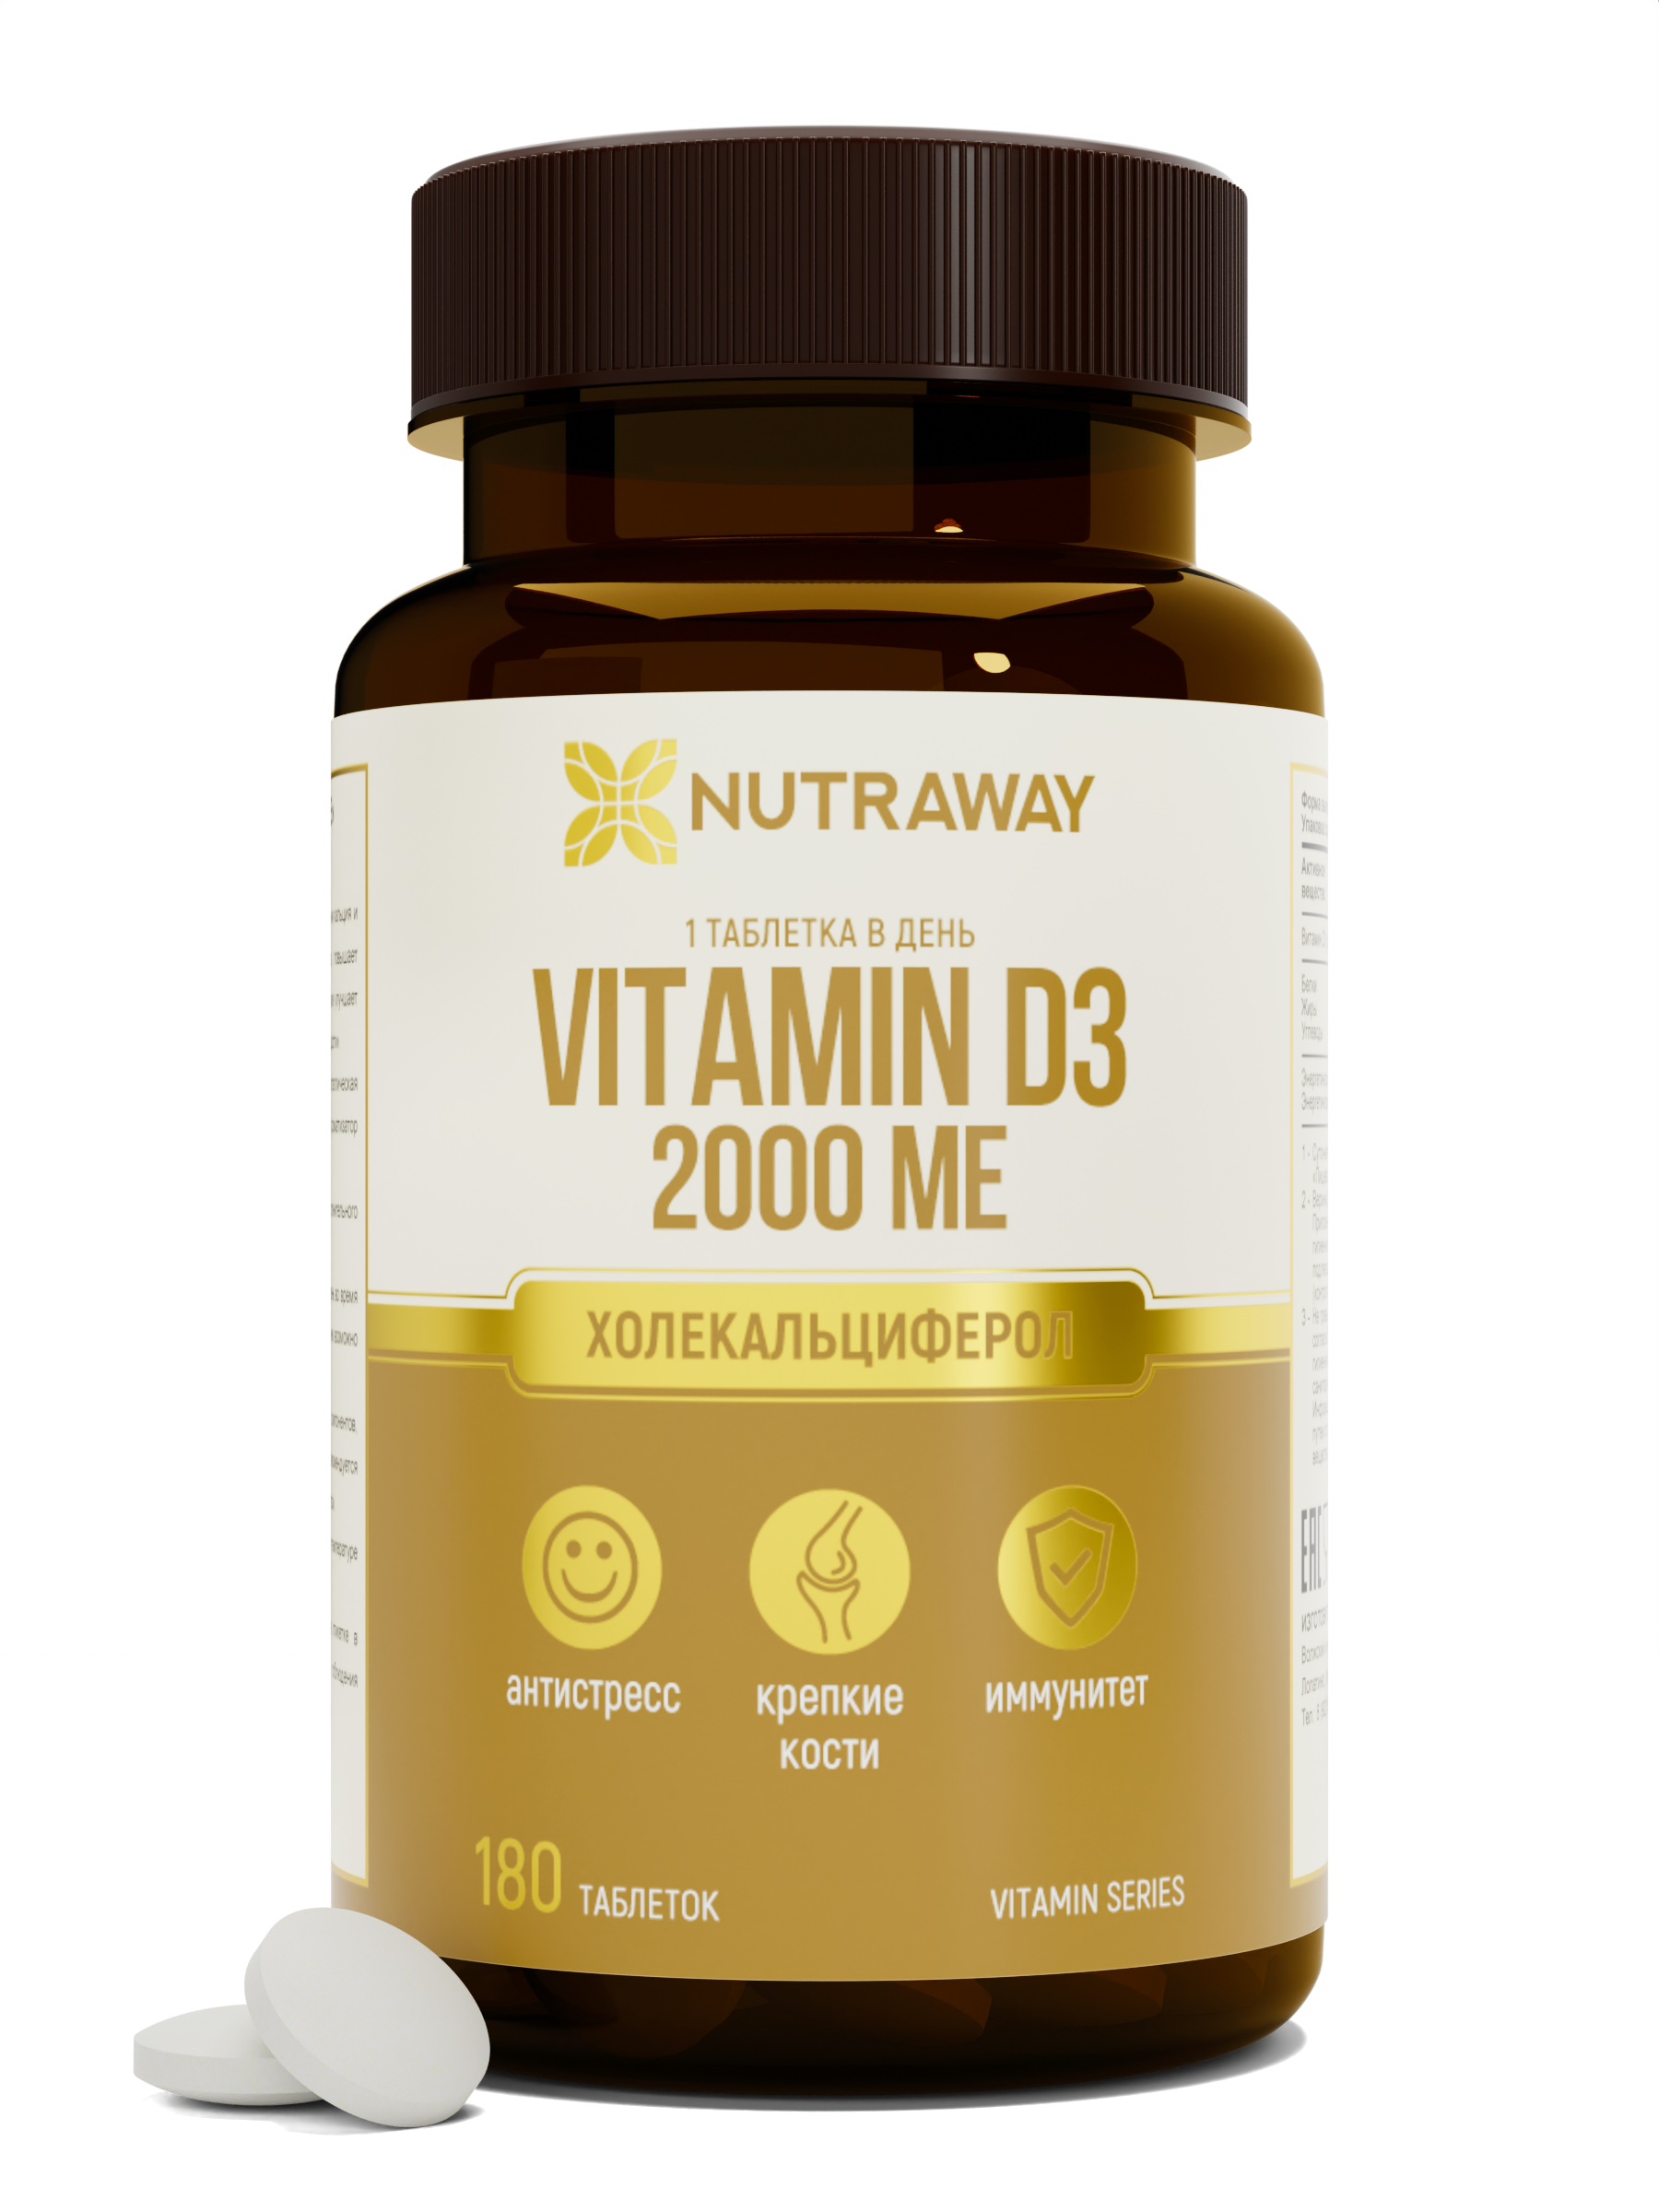 Купить Витамин Д3 NUTRAWAY Vitamin D3 таблетки 2000 ME 180 шт.